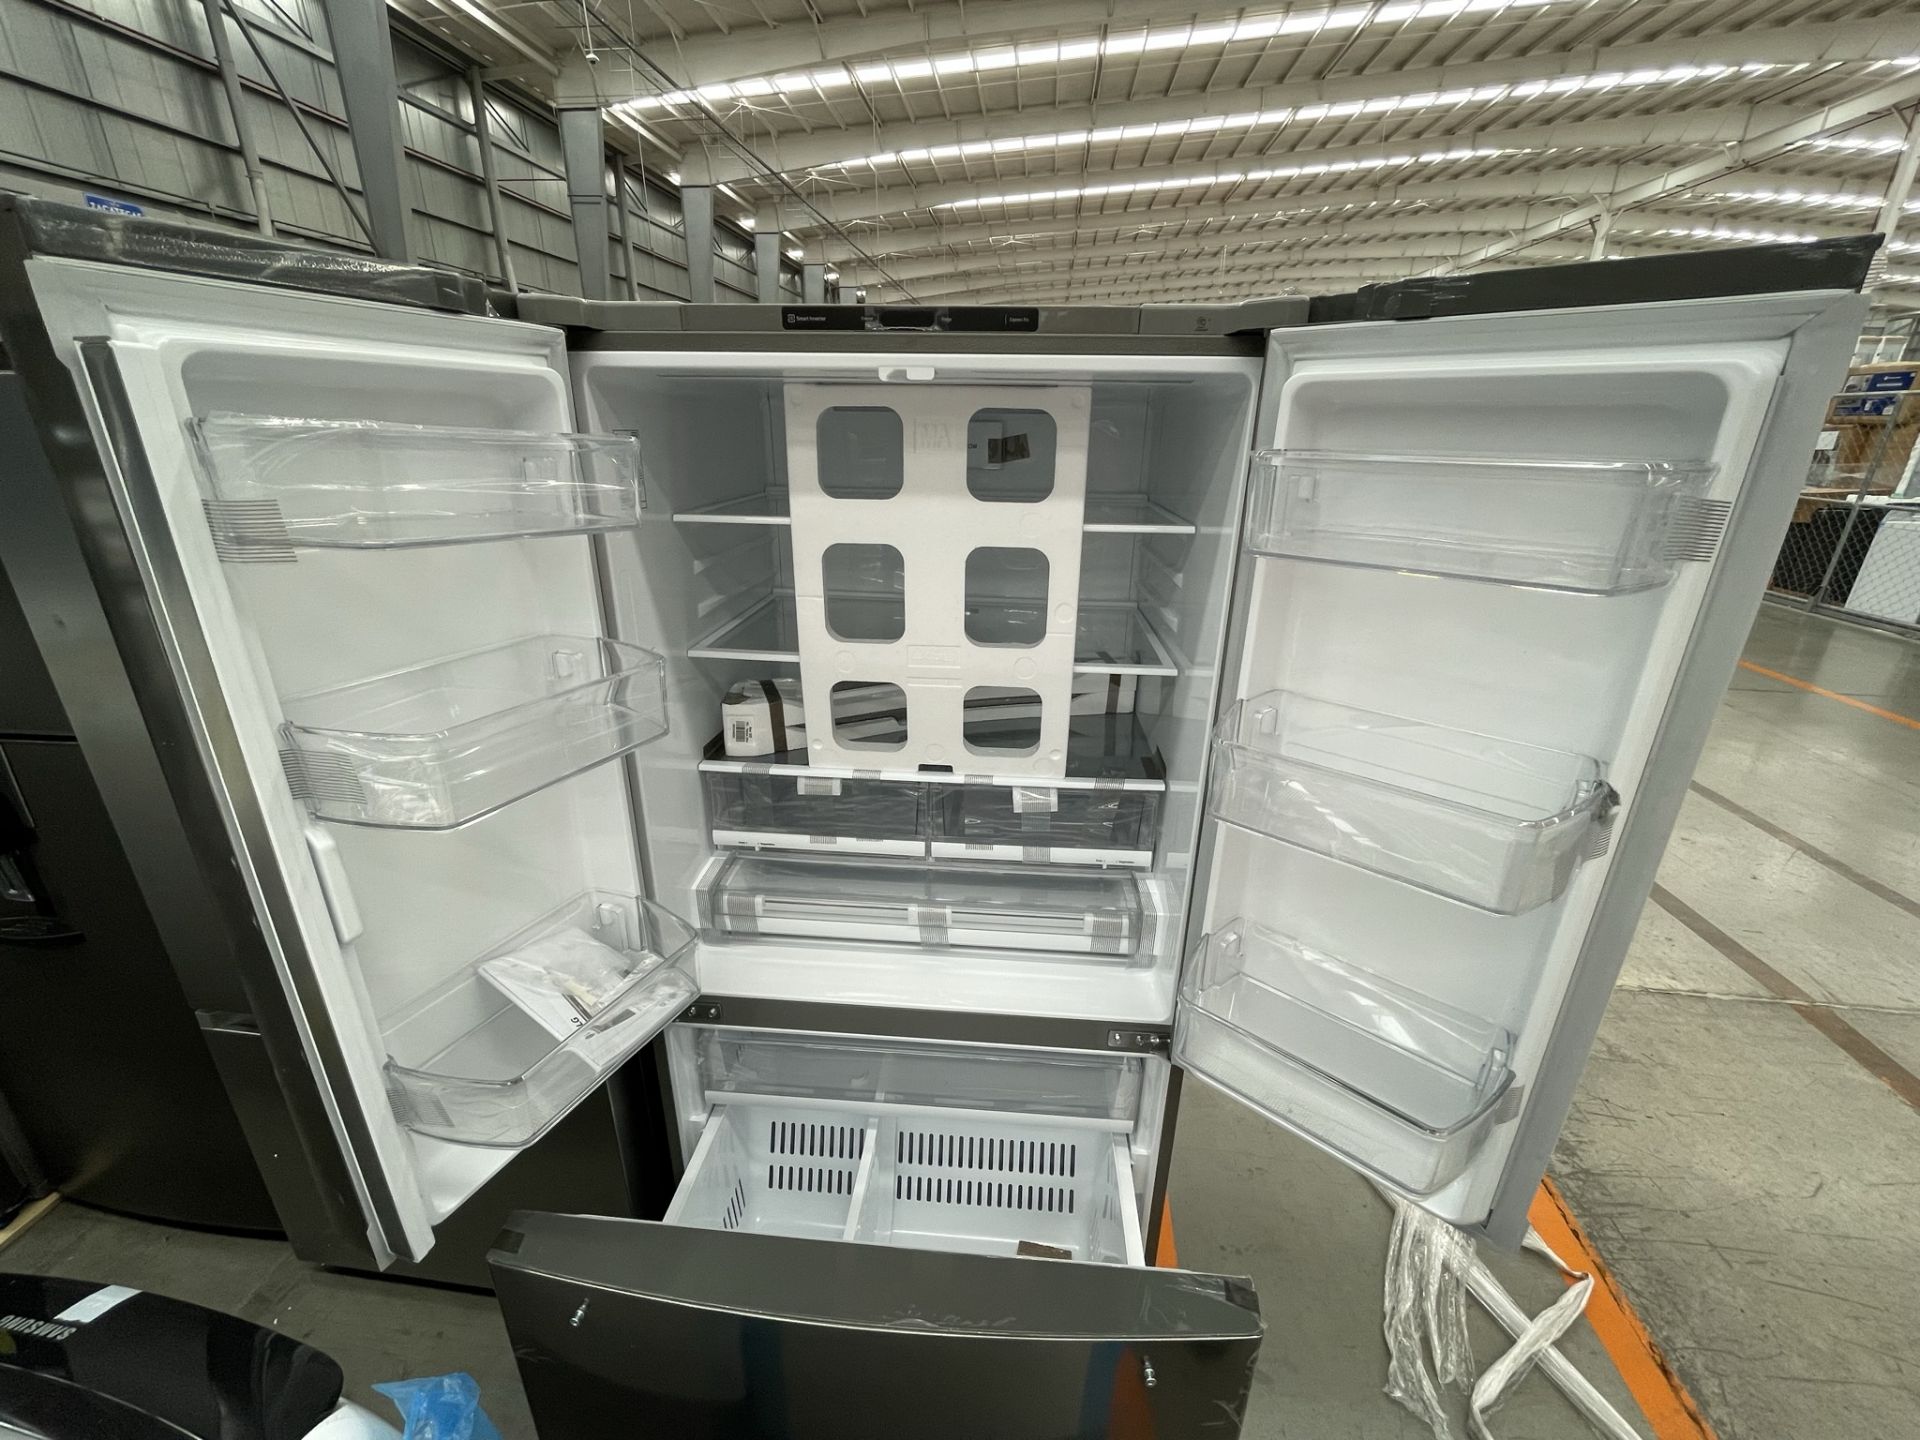 (EQUIPO NUEVO) 1 Refrigerador Marca LG, Modelo GM29BP, Serie R30233, Color GRIS, LB-621556; (Nuevo, - Image 4 of 9